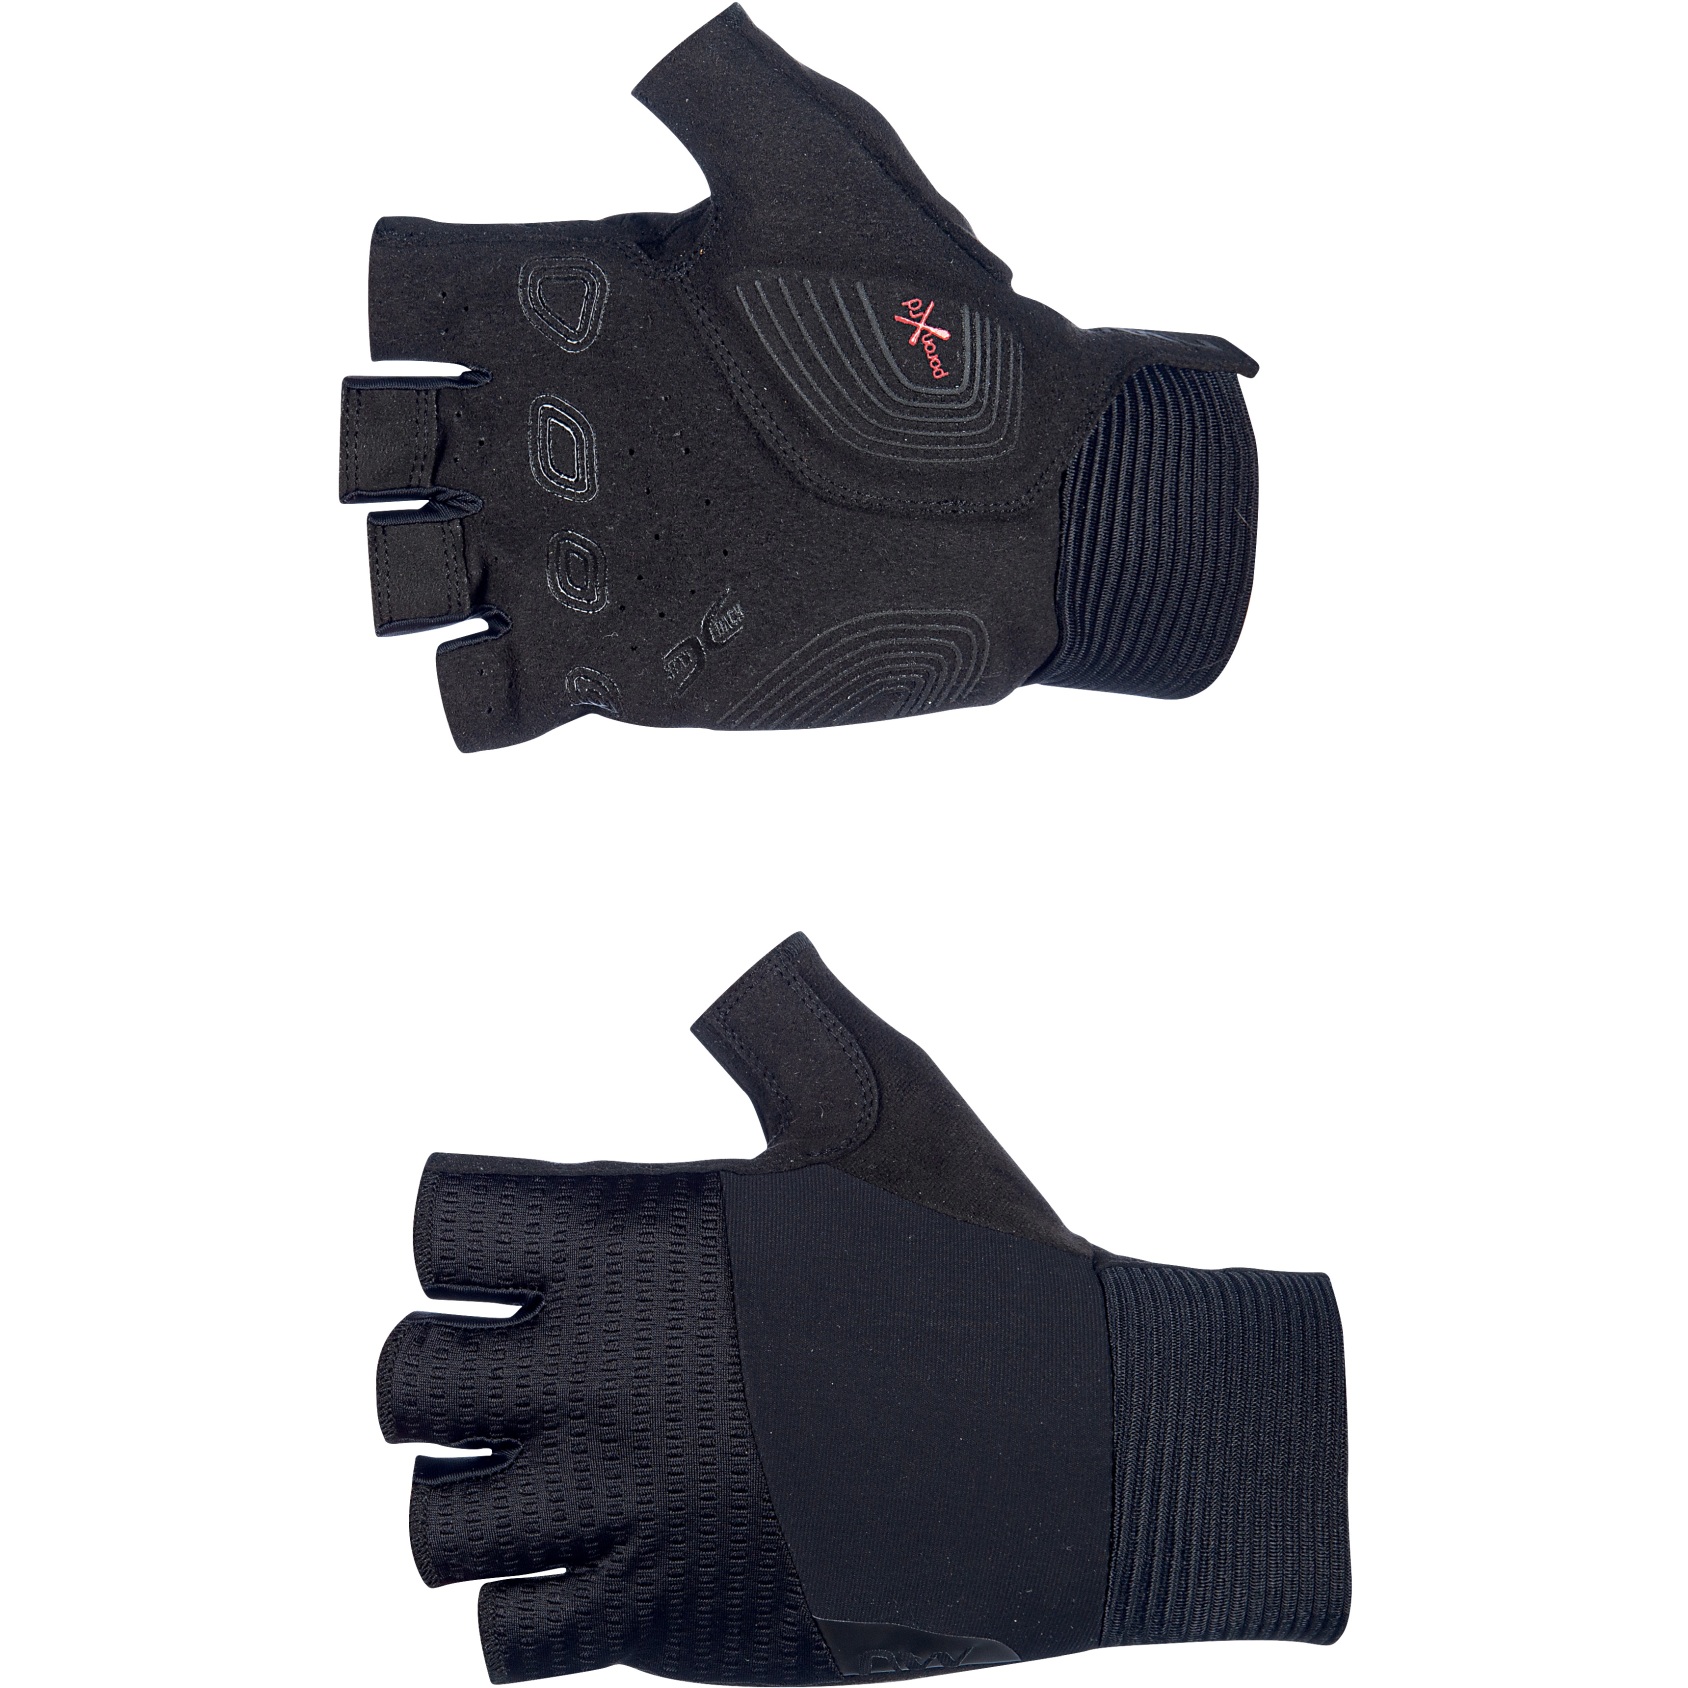 Produktbild von Northwave Extreme Pro Kurzfinger-Handschuhe Herren - schwarz 10